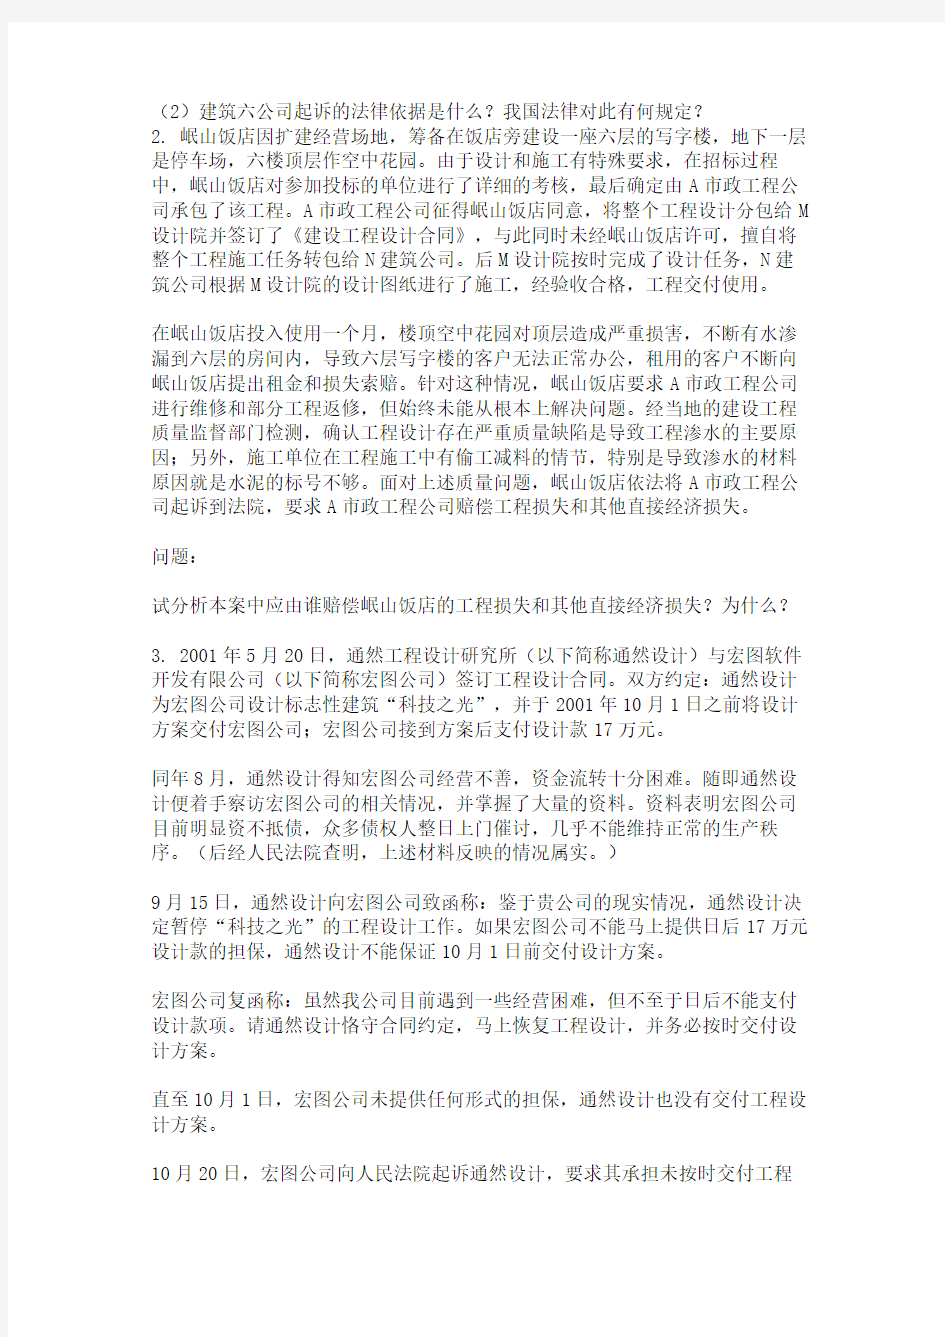 重庆大学网教作业答案-建设法规-